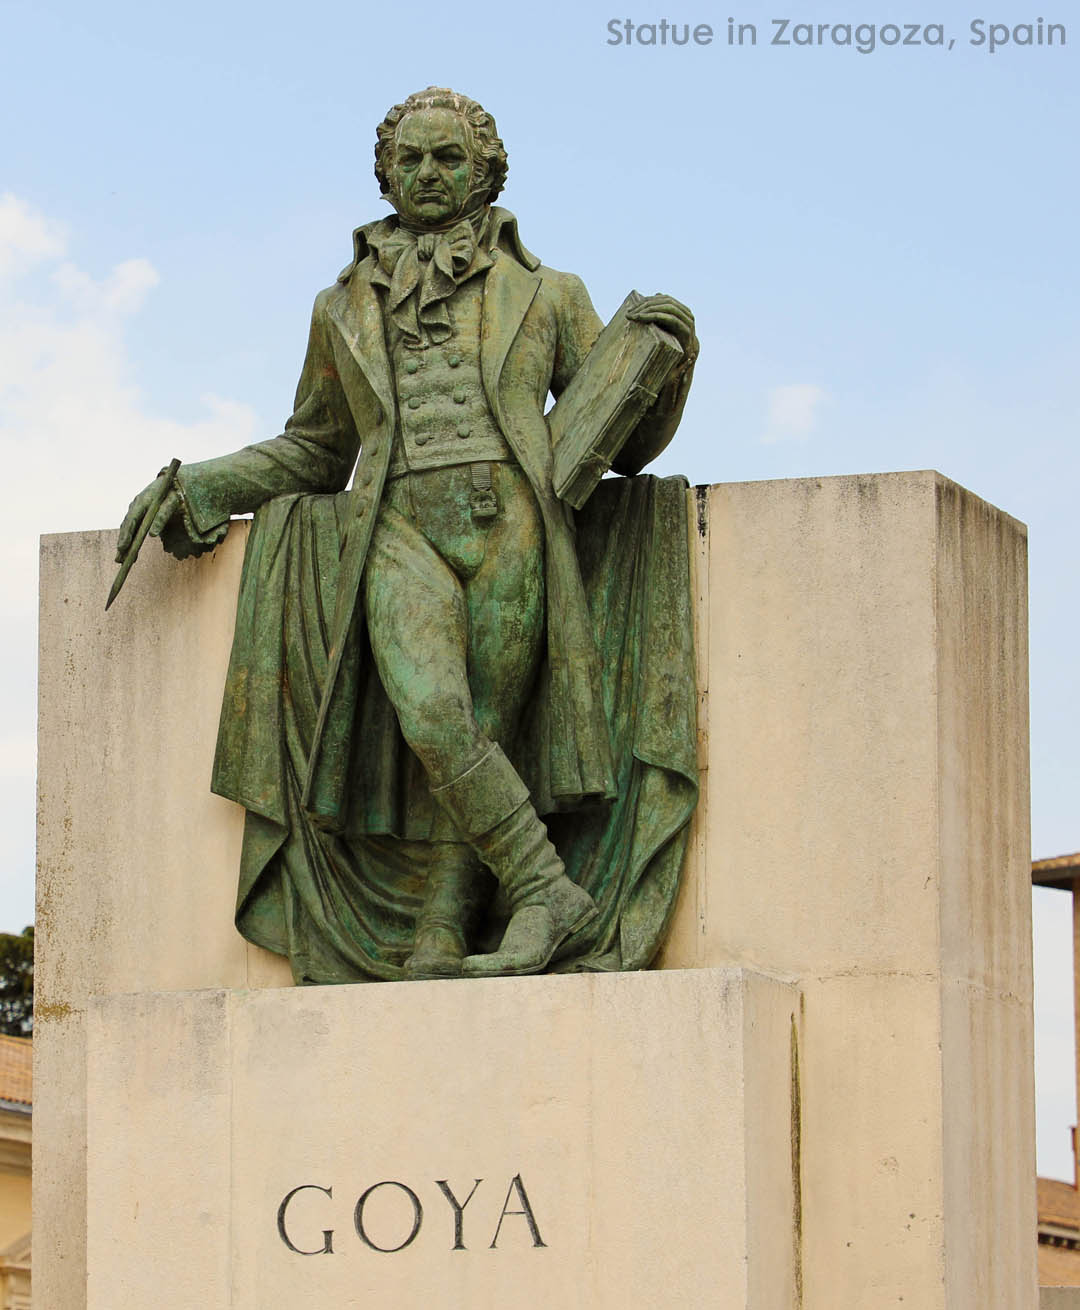 Statue of Goya in Zaragoza Spain